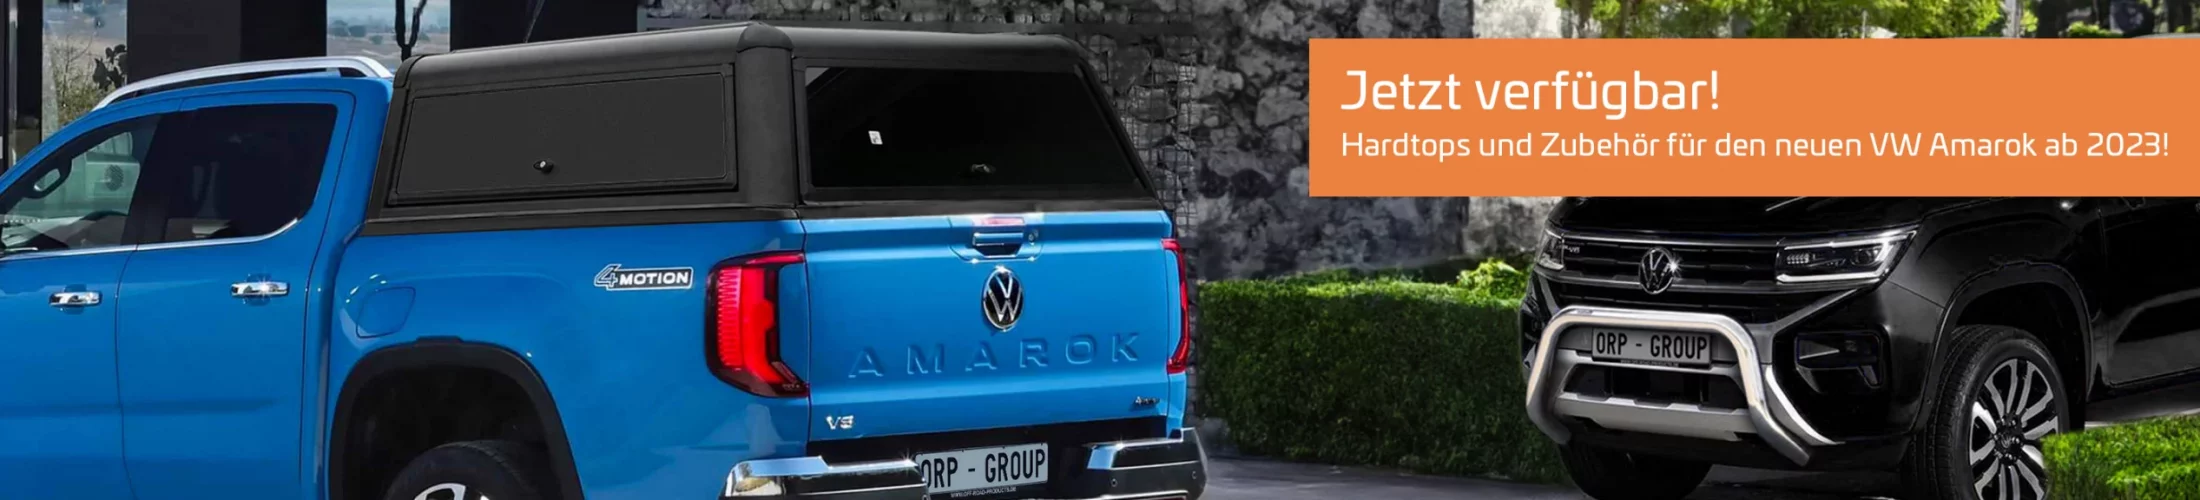 Neu: Hardtops und Zubehör für den neuen VW Amarok ab 2023